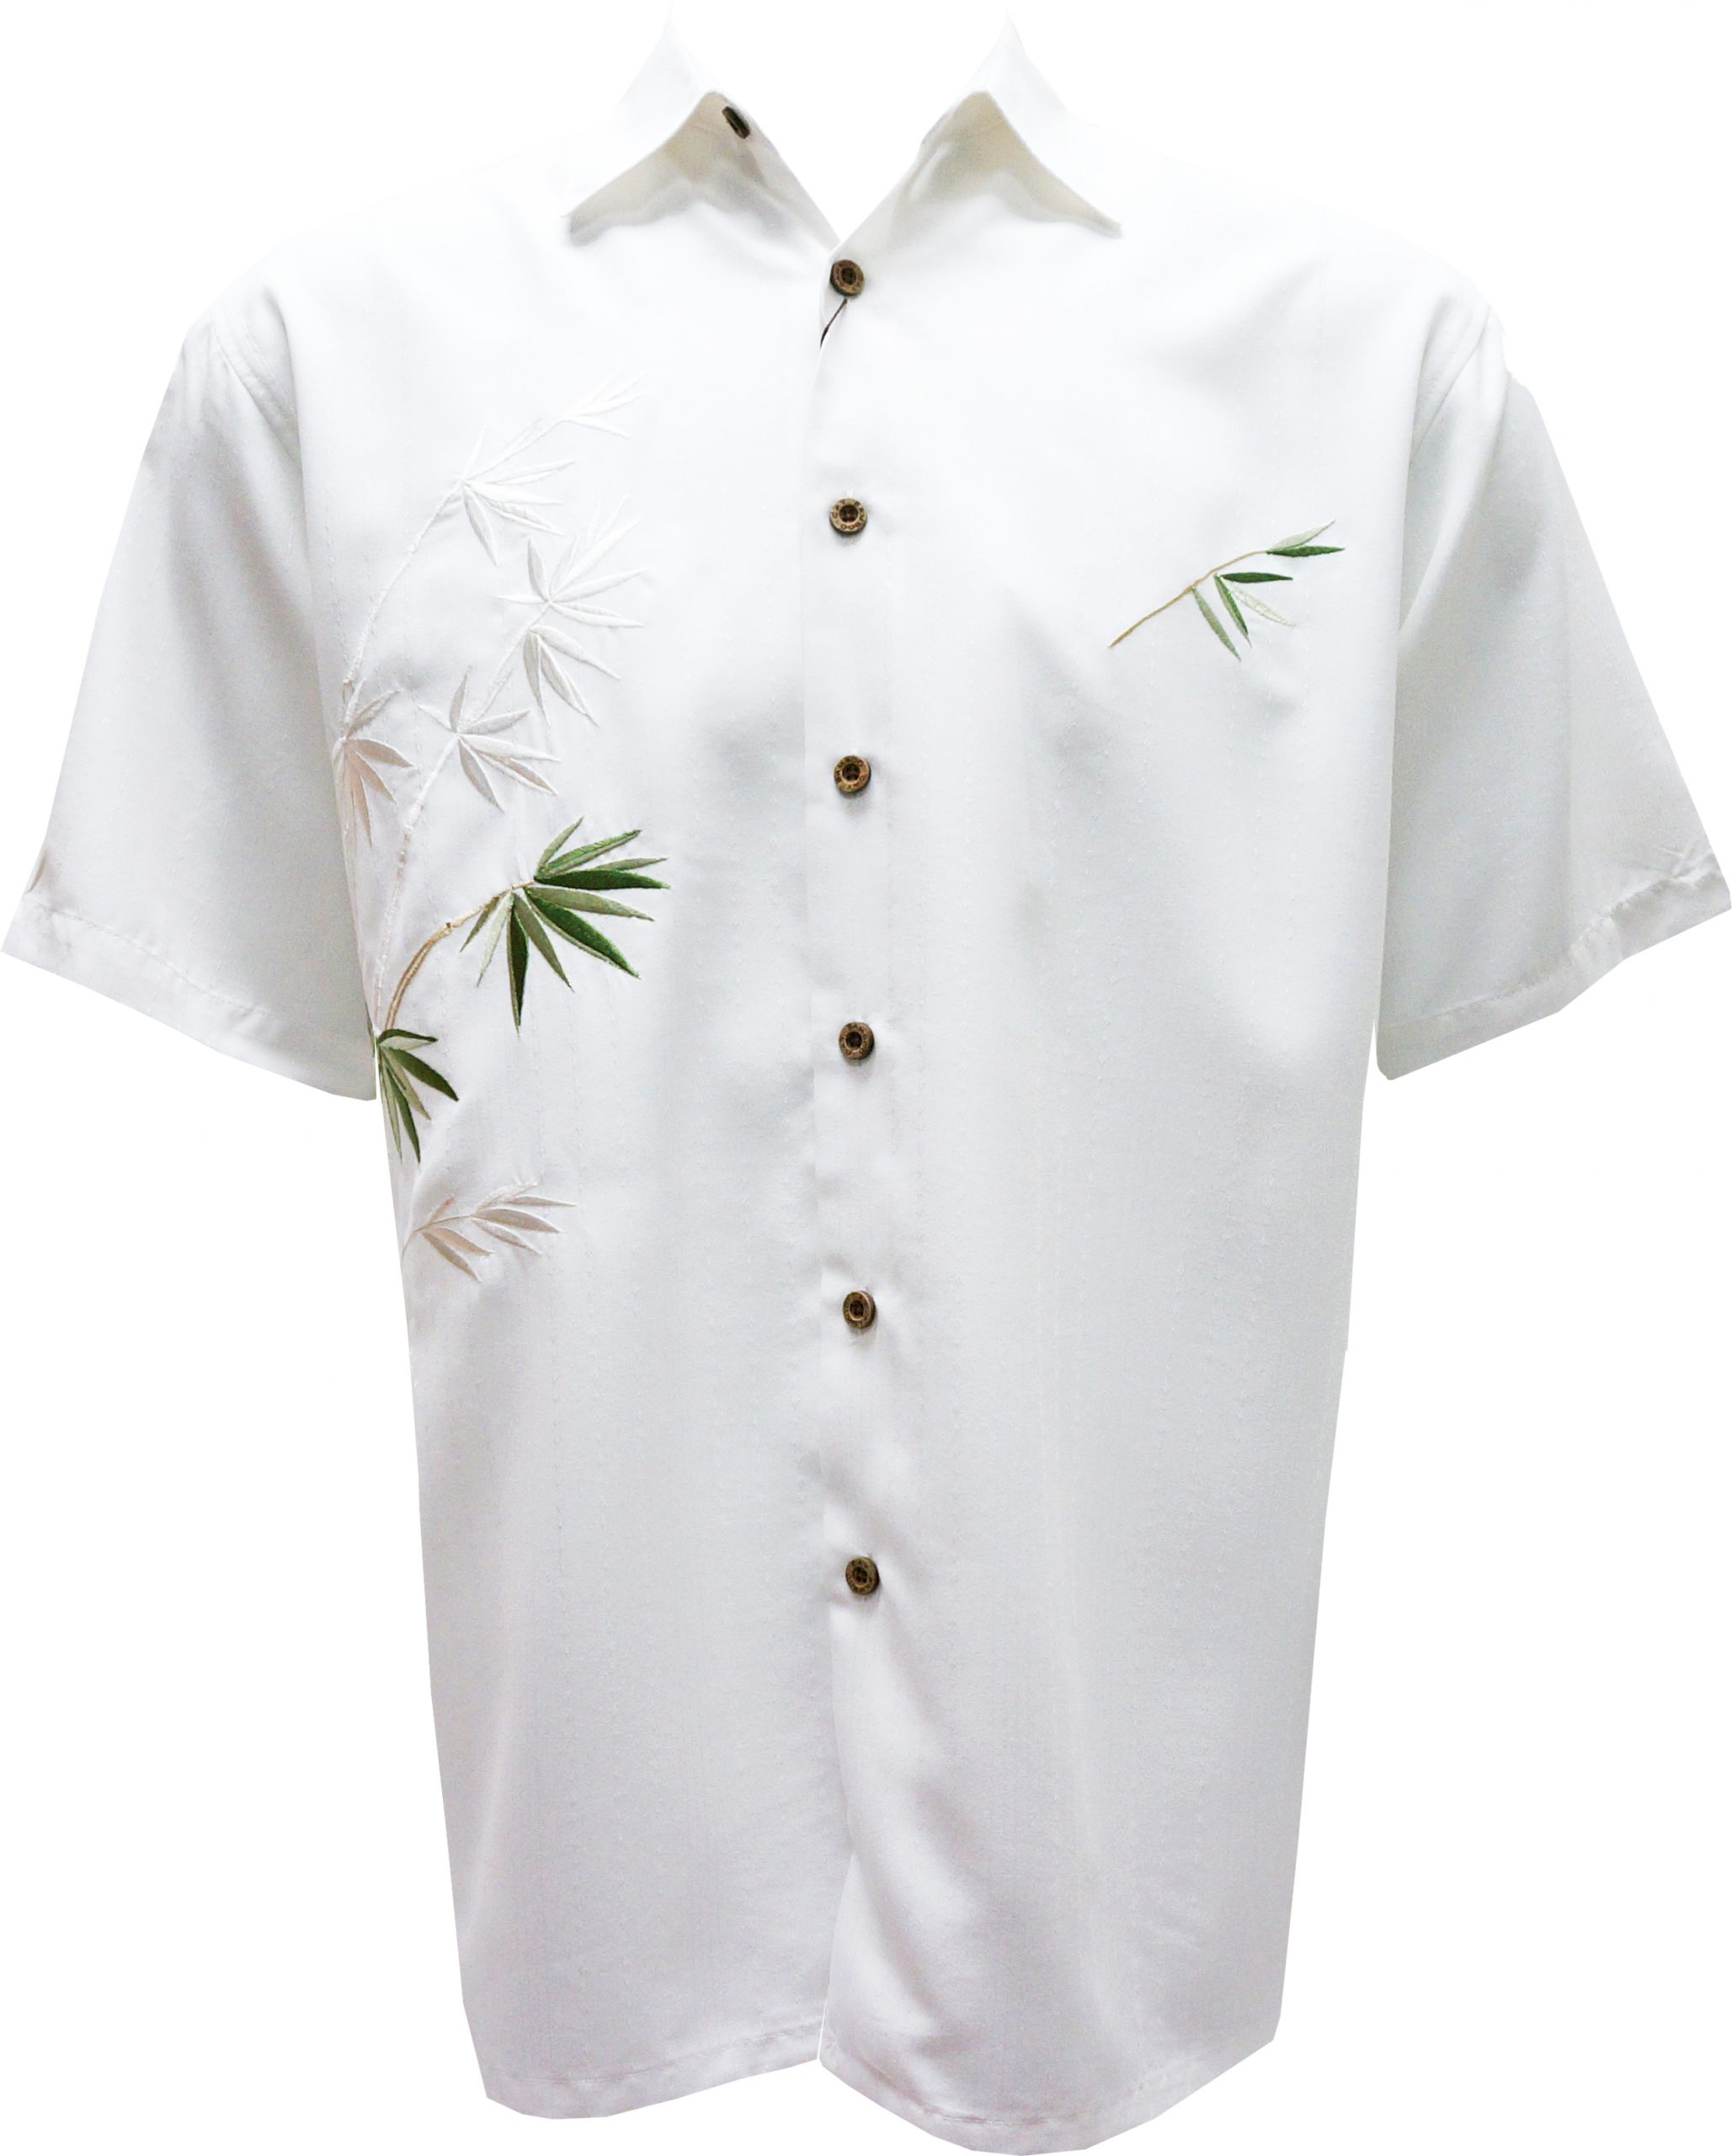 bamboo cay hawaiian wedding shirt